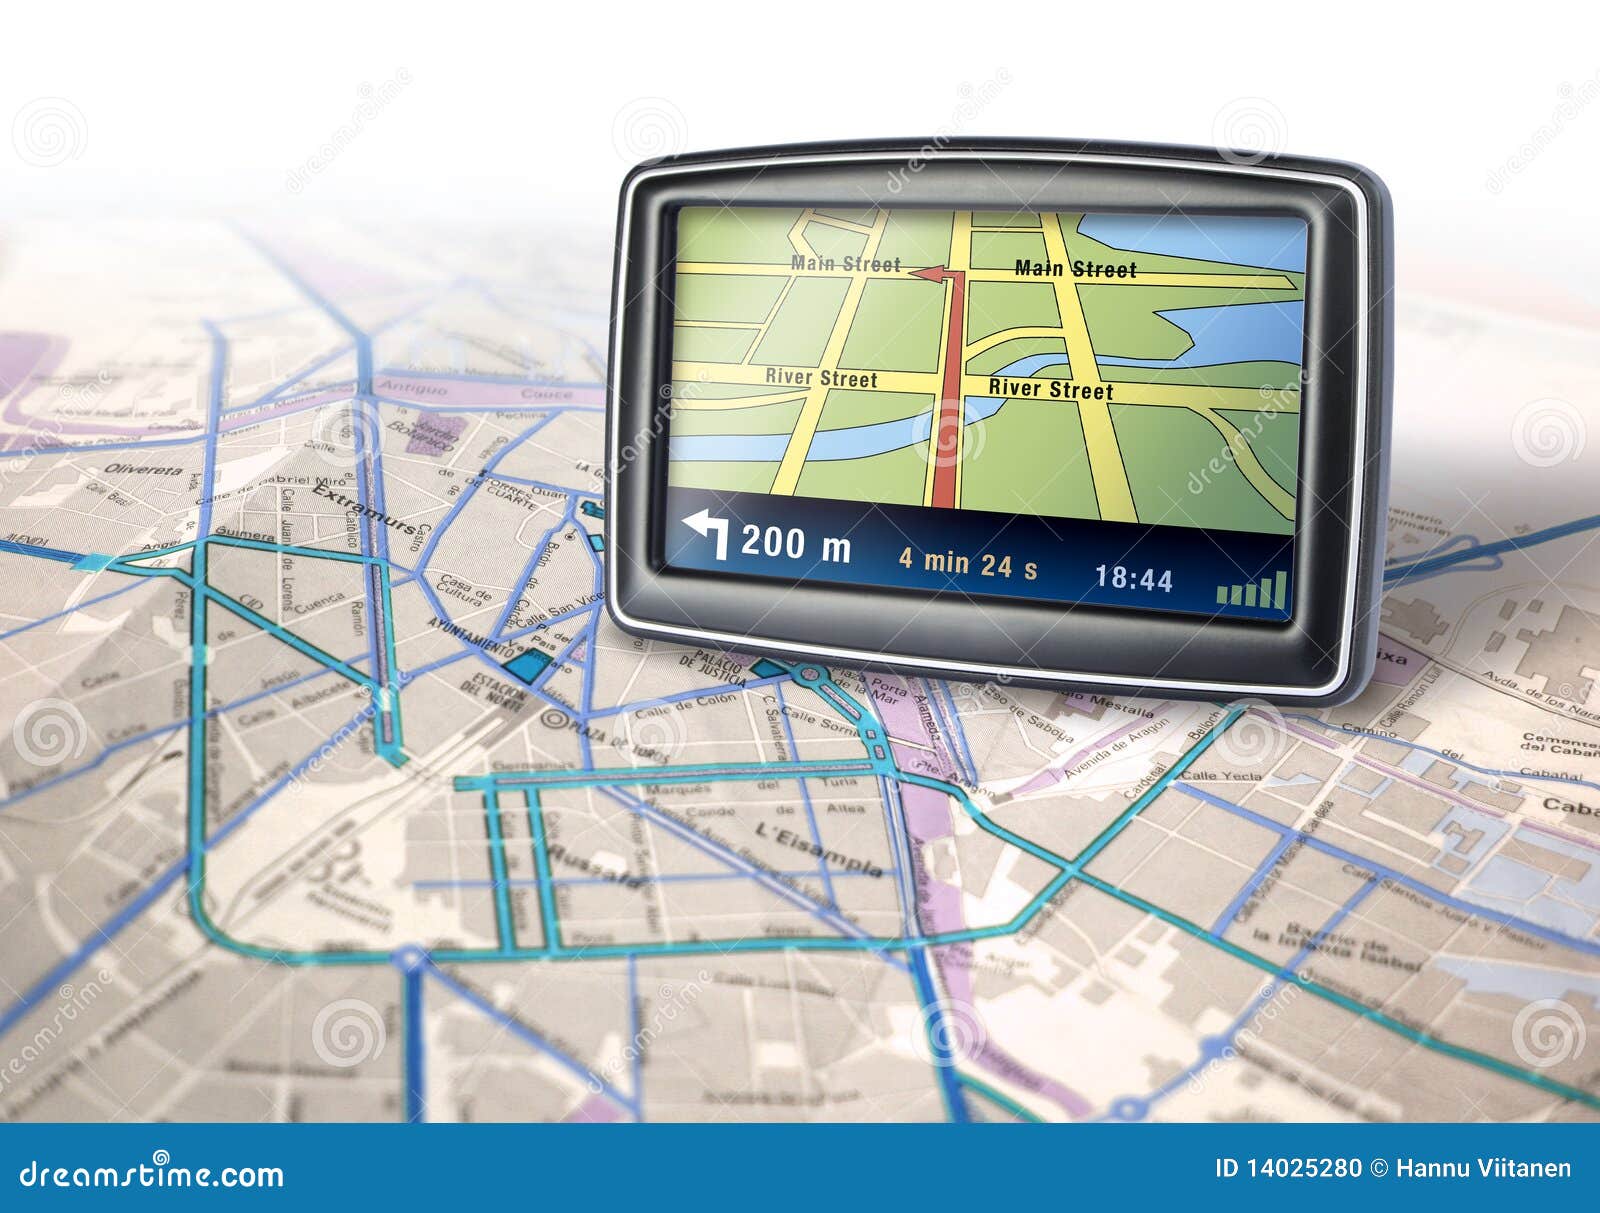 Voiture Navigator Appareil Navigation Gps Vecteurs libres de